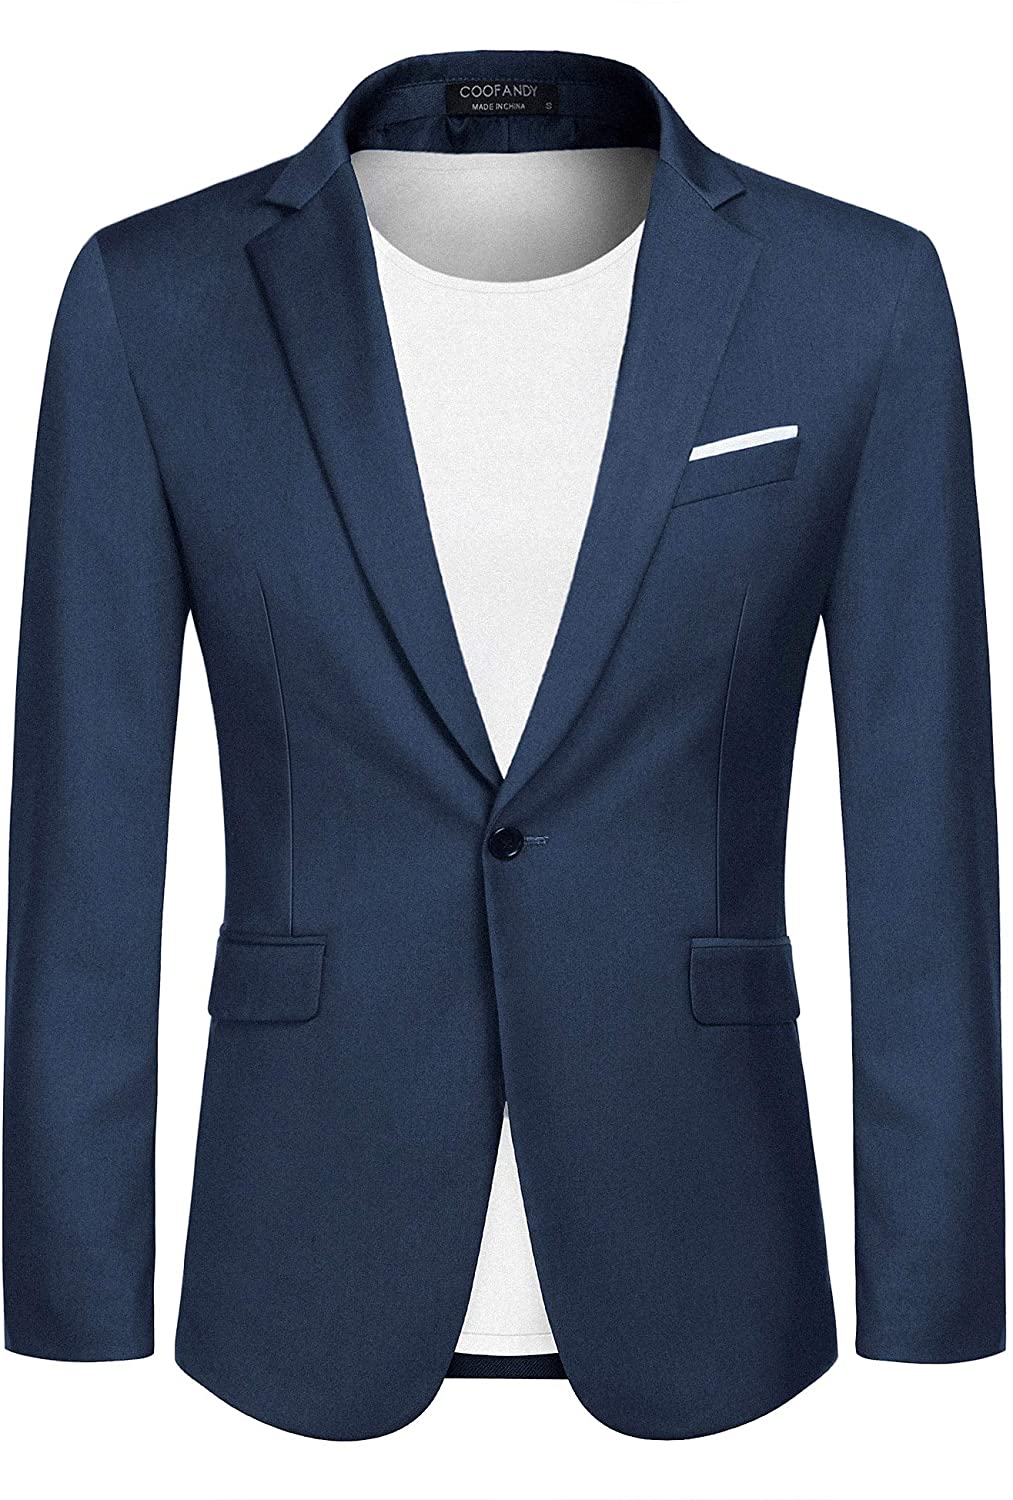 COOFANDY Men's Casual Blazer Jacket Slim Fit Sport Coats Lightweight ...